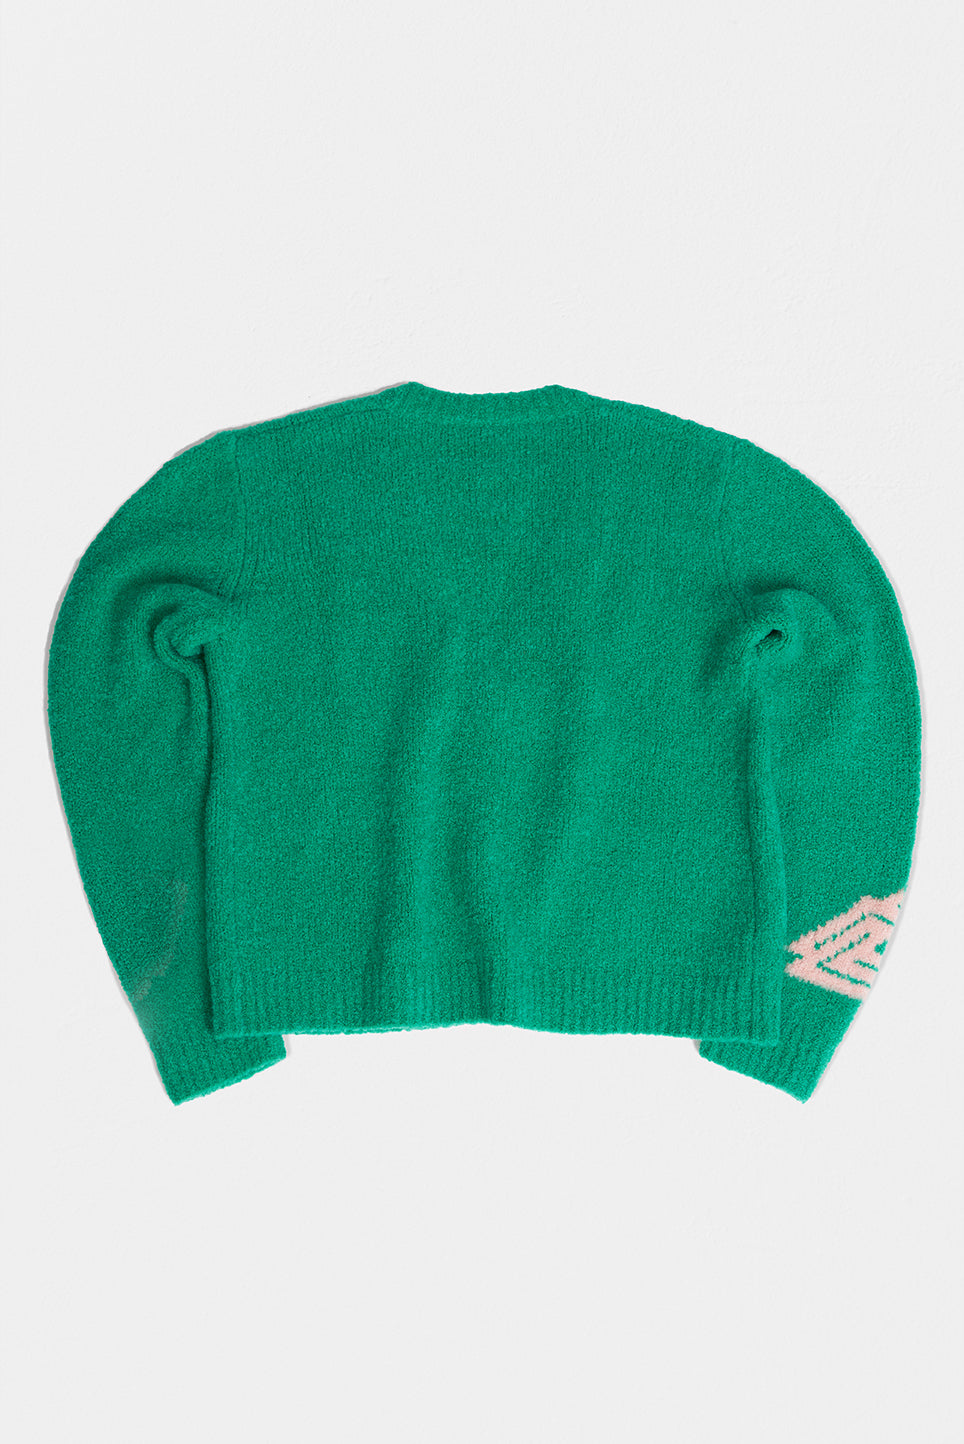 mens green knitwear